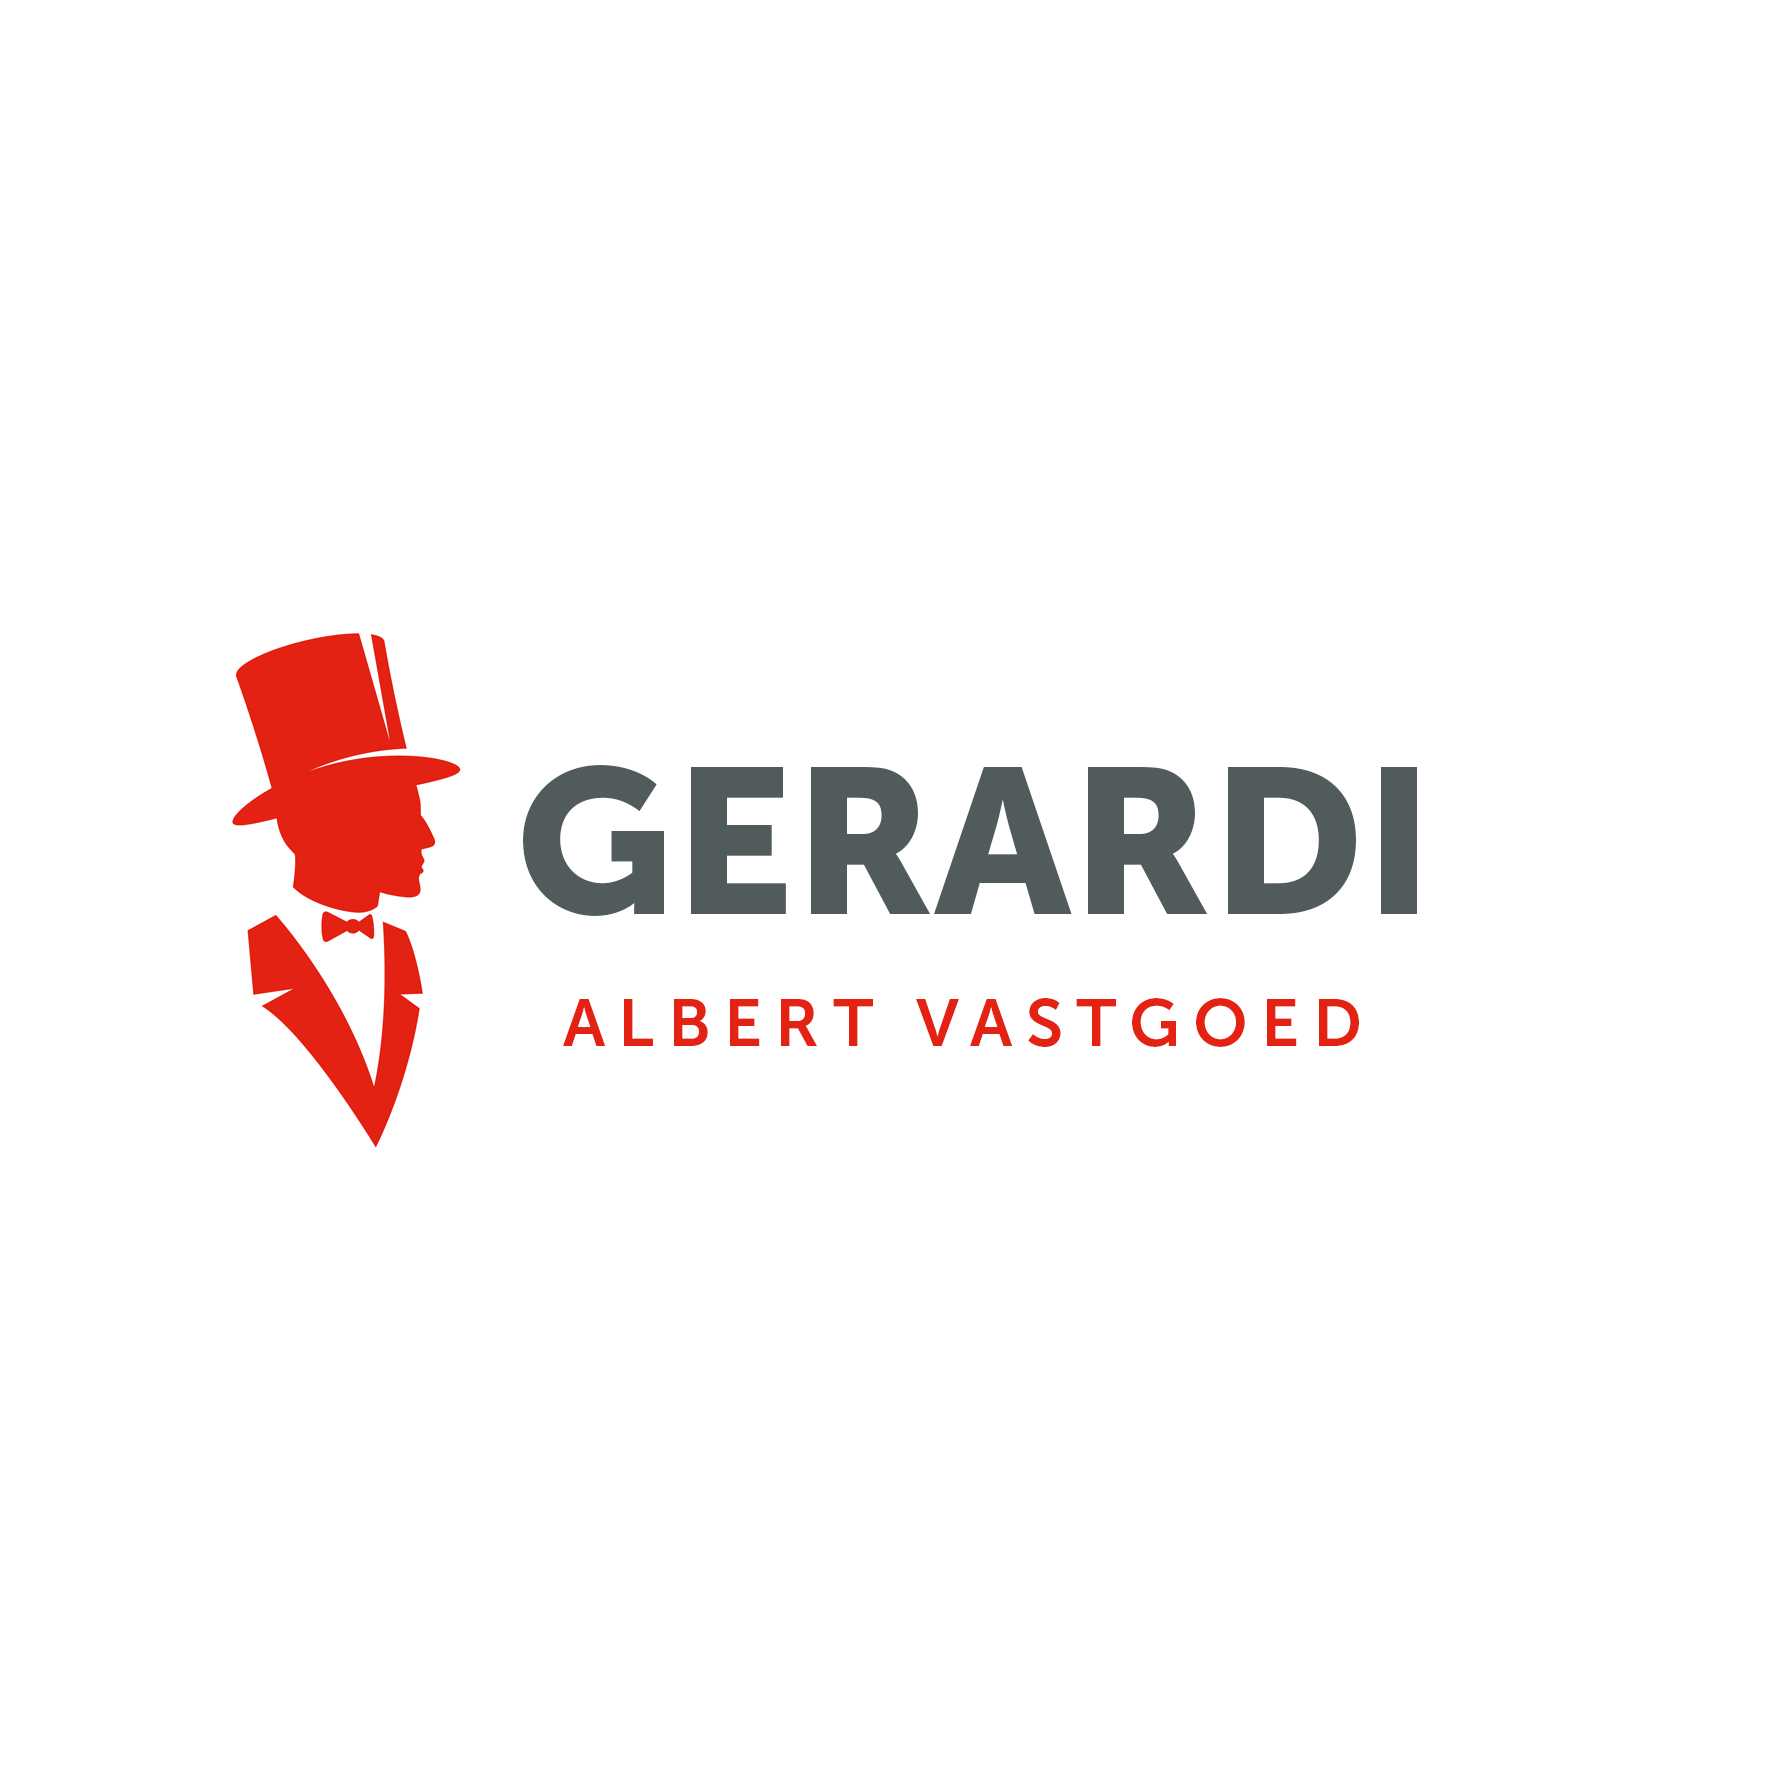 Gerardi by Albert